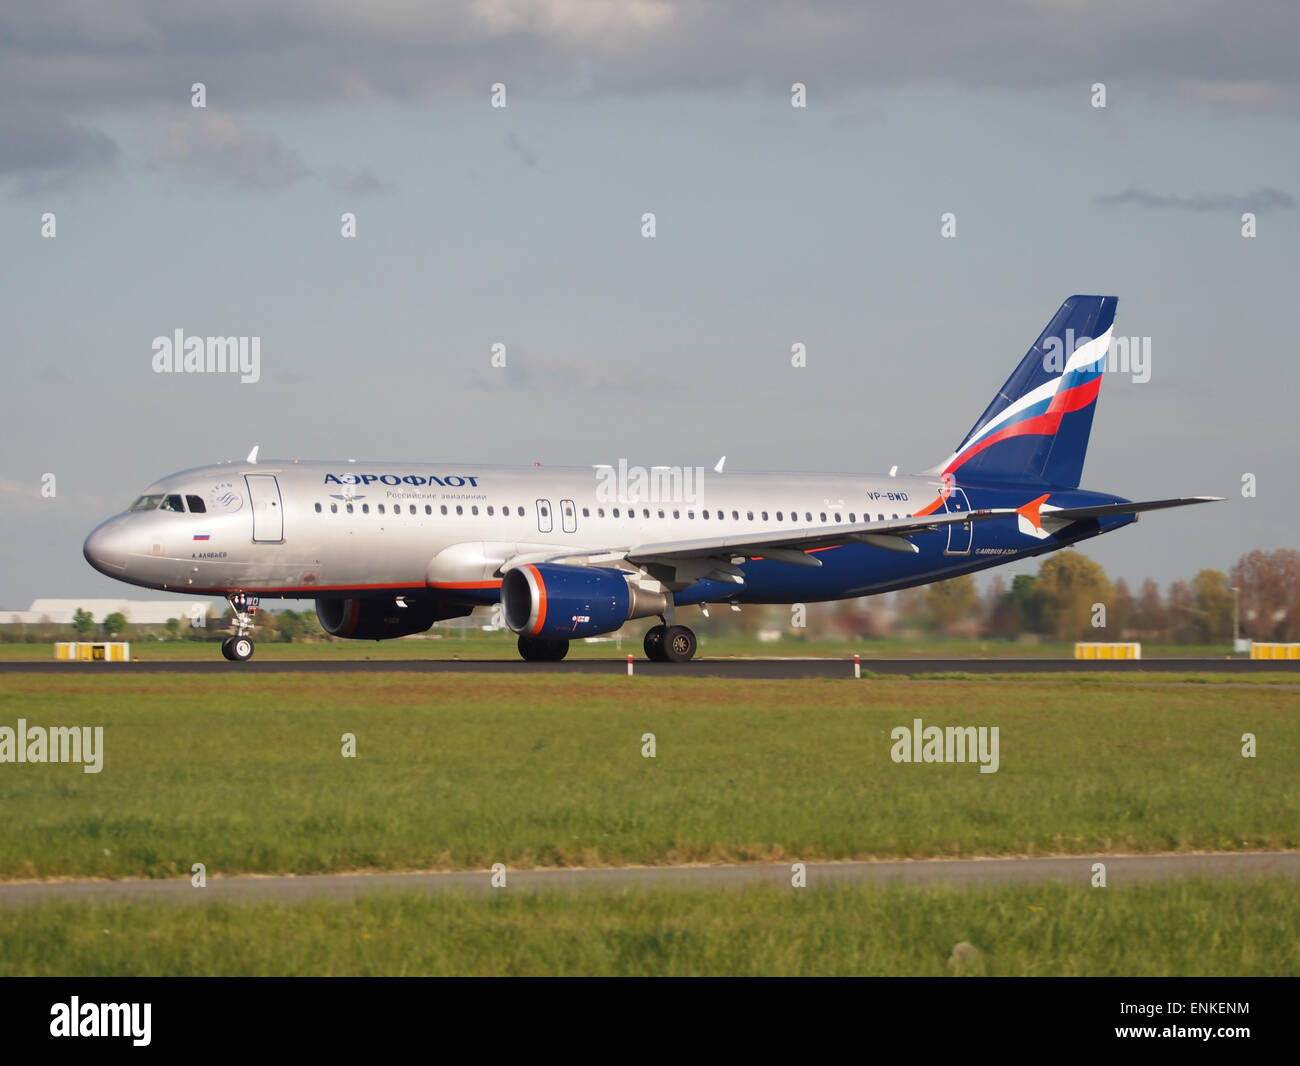 VP-BWD "Aeroflot - las líneas aéreas rusas" Airbus A320-214 de despegue de Polderbaan, Schiphol (AMS - EHAM) al atardecer Foto de stock